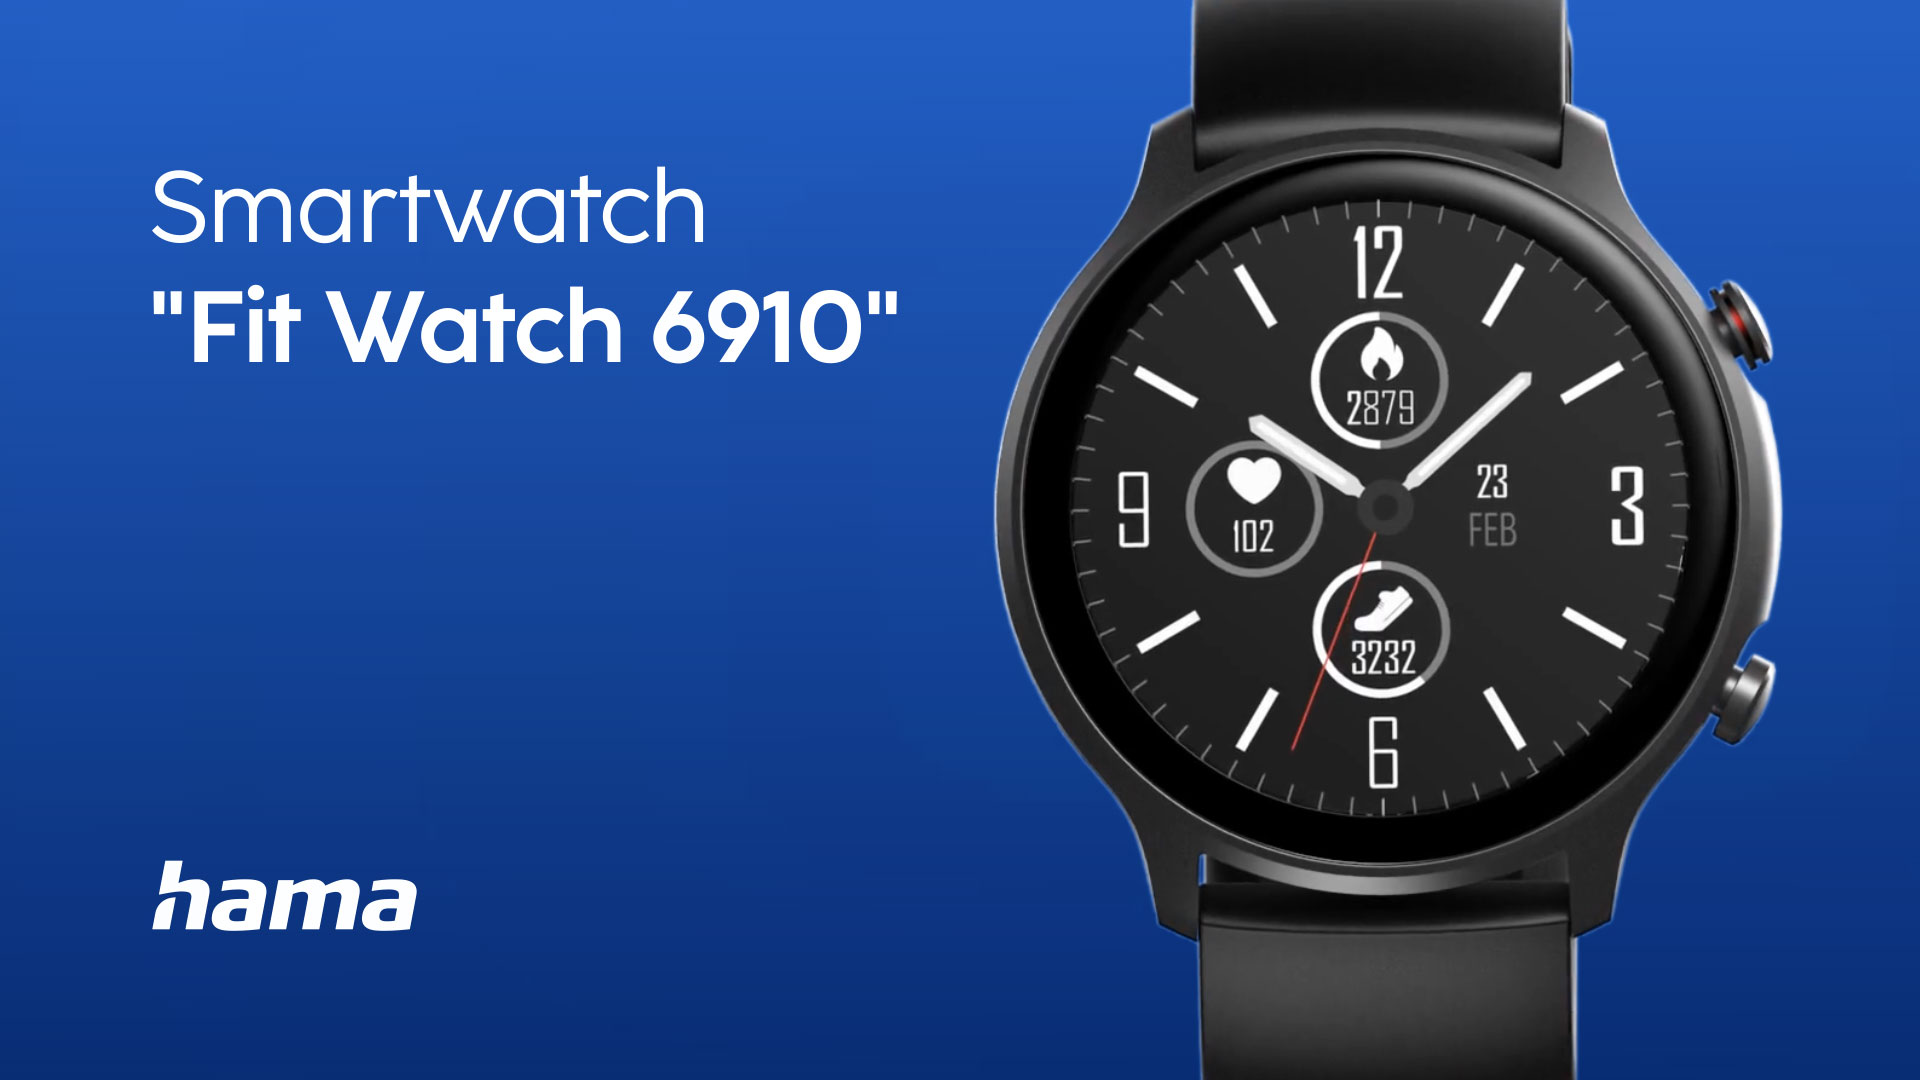 Hama Smart Watch "Fit Watch 6910“